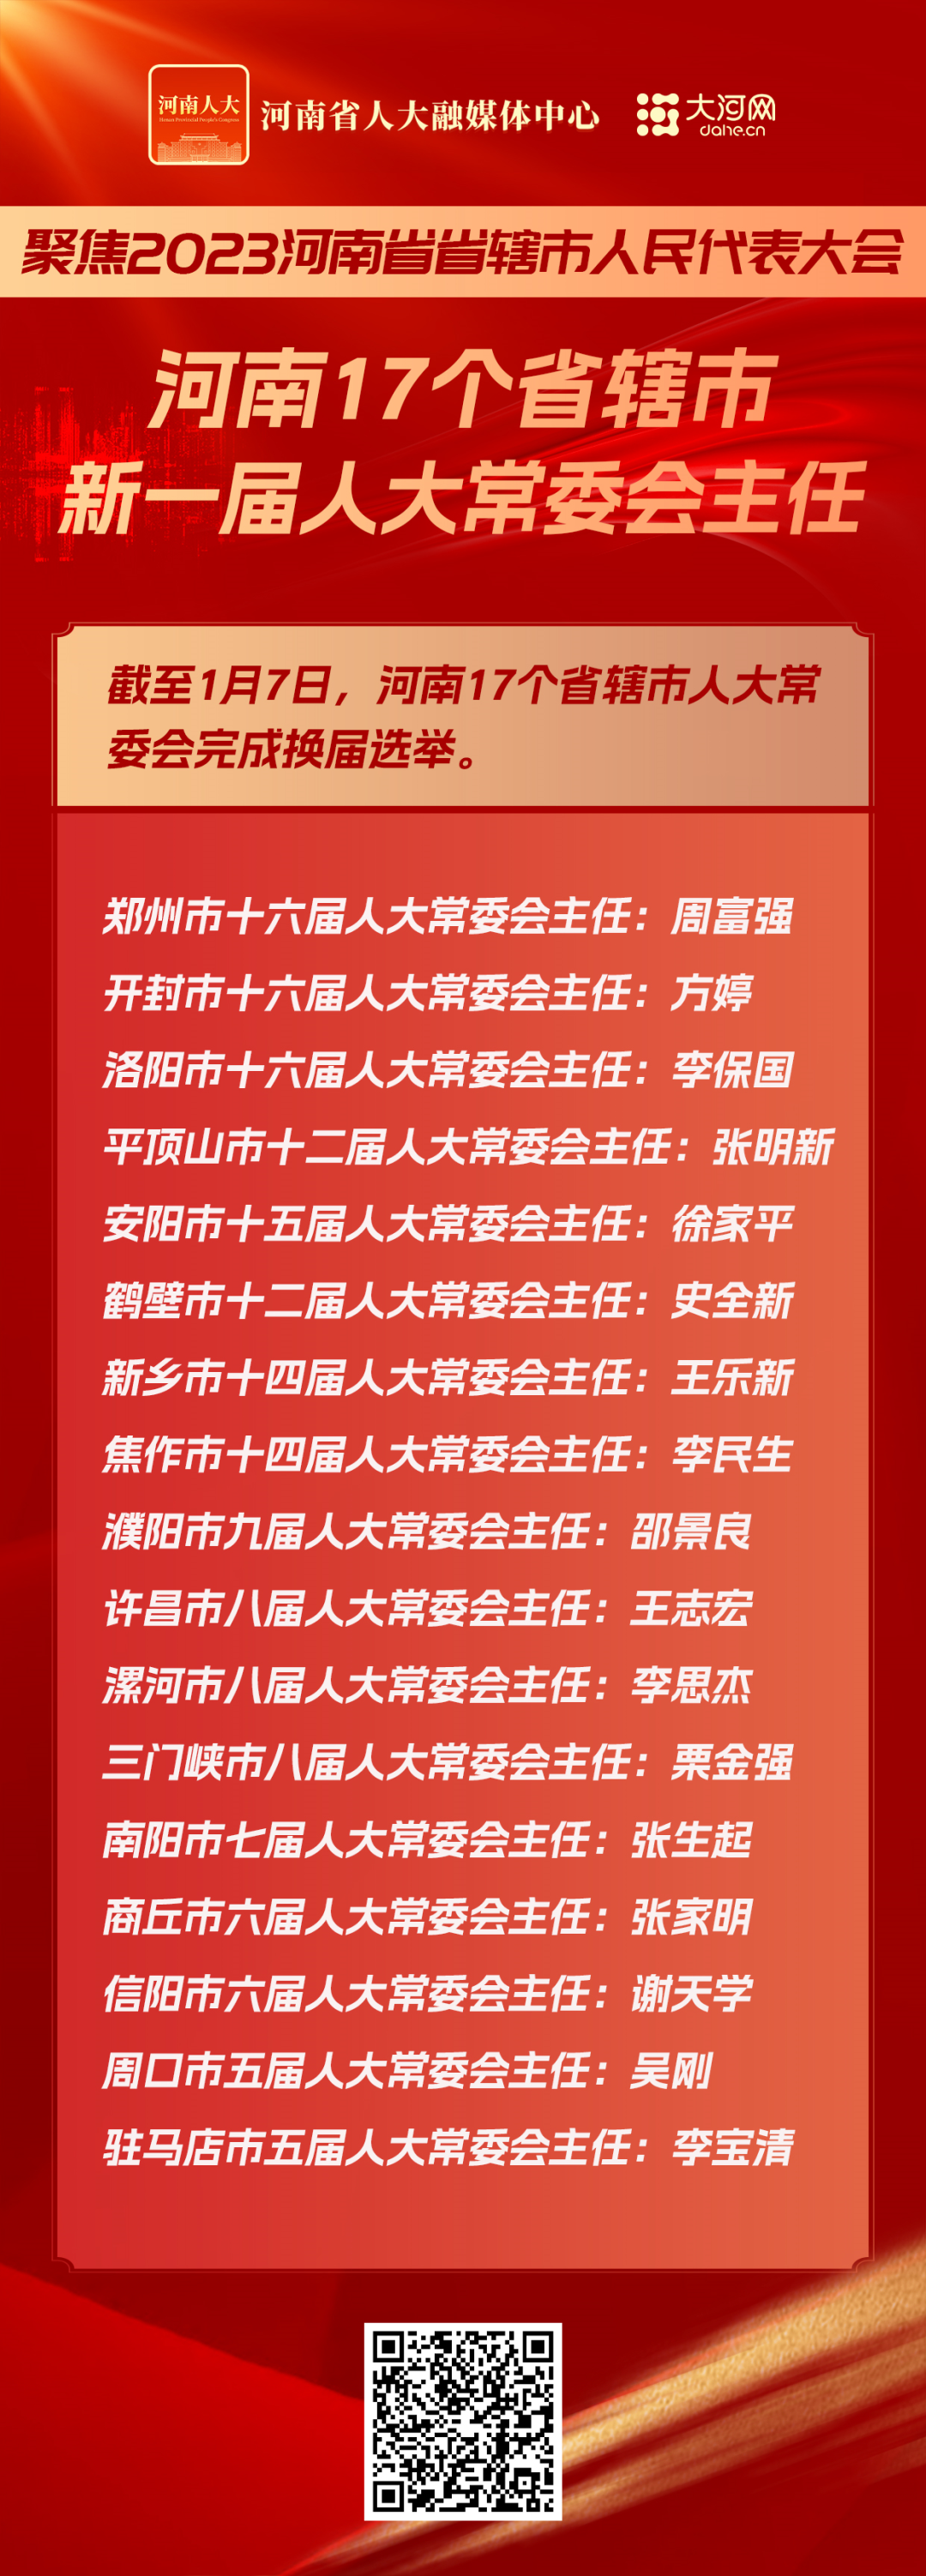 河南17个省辖市新一届人大常委会、政府、政协领导班子名单